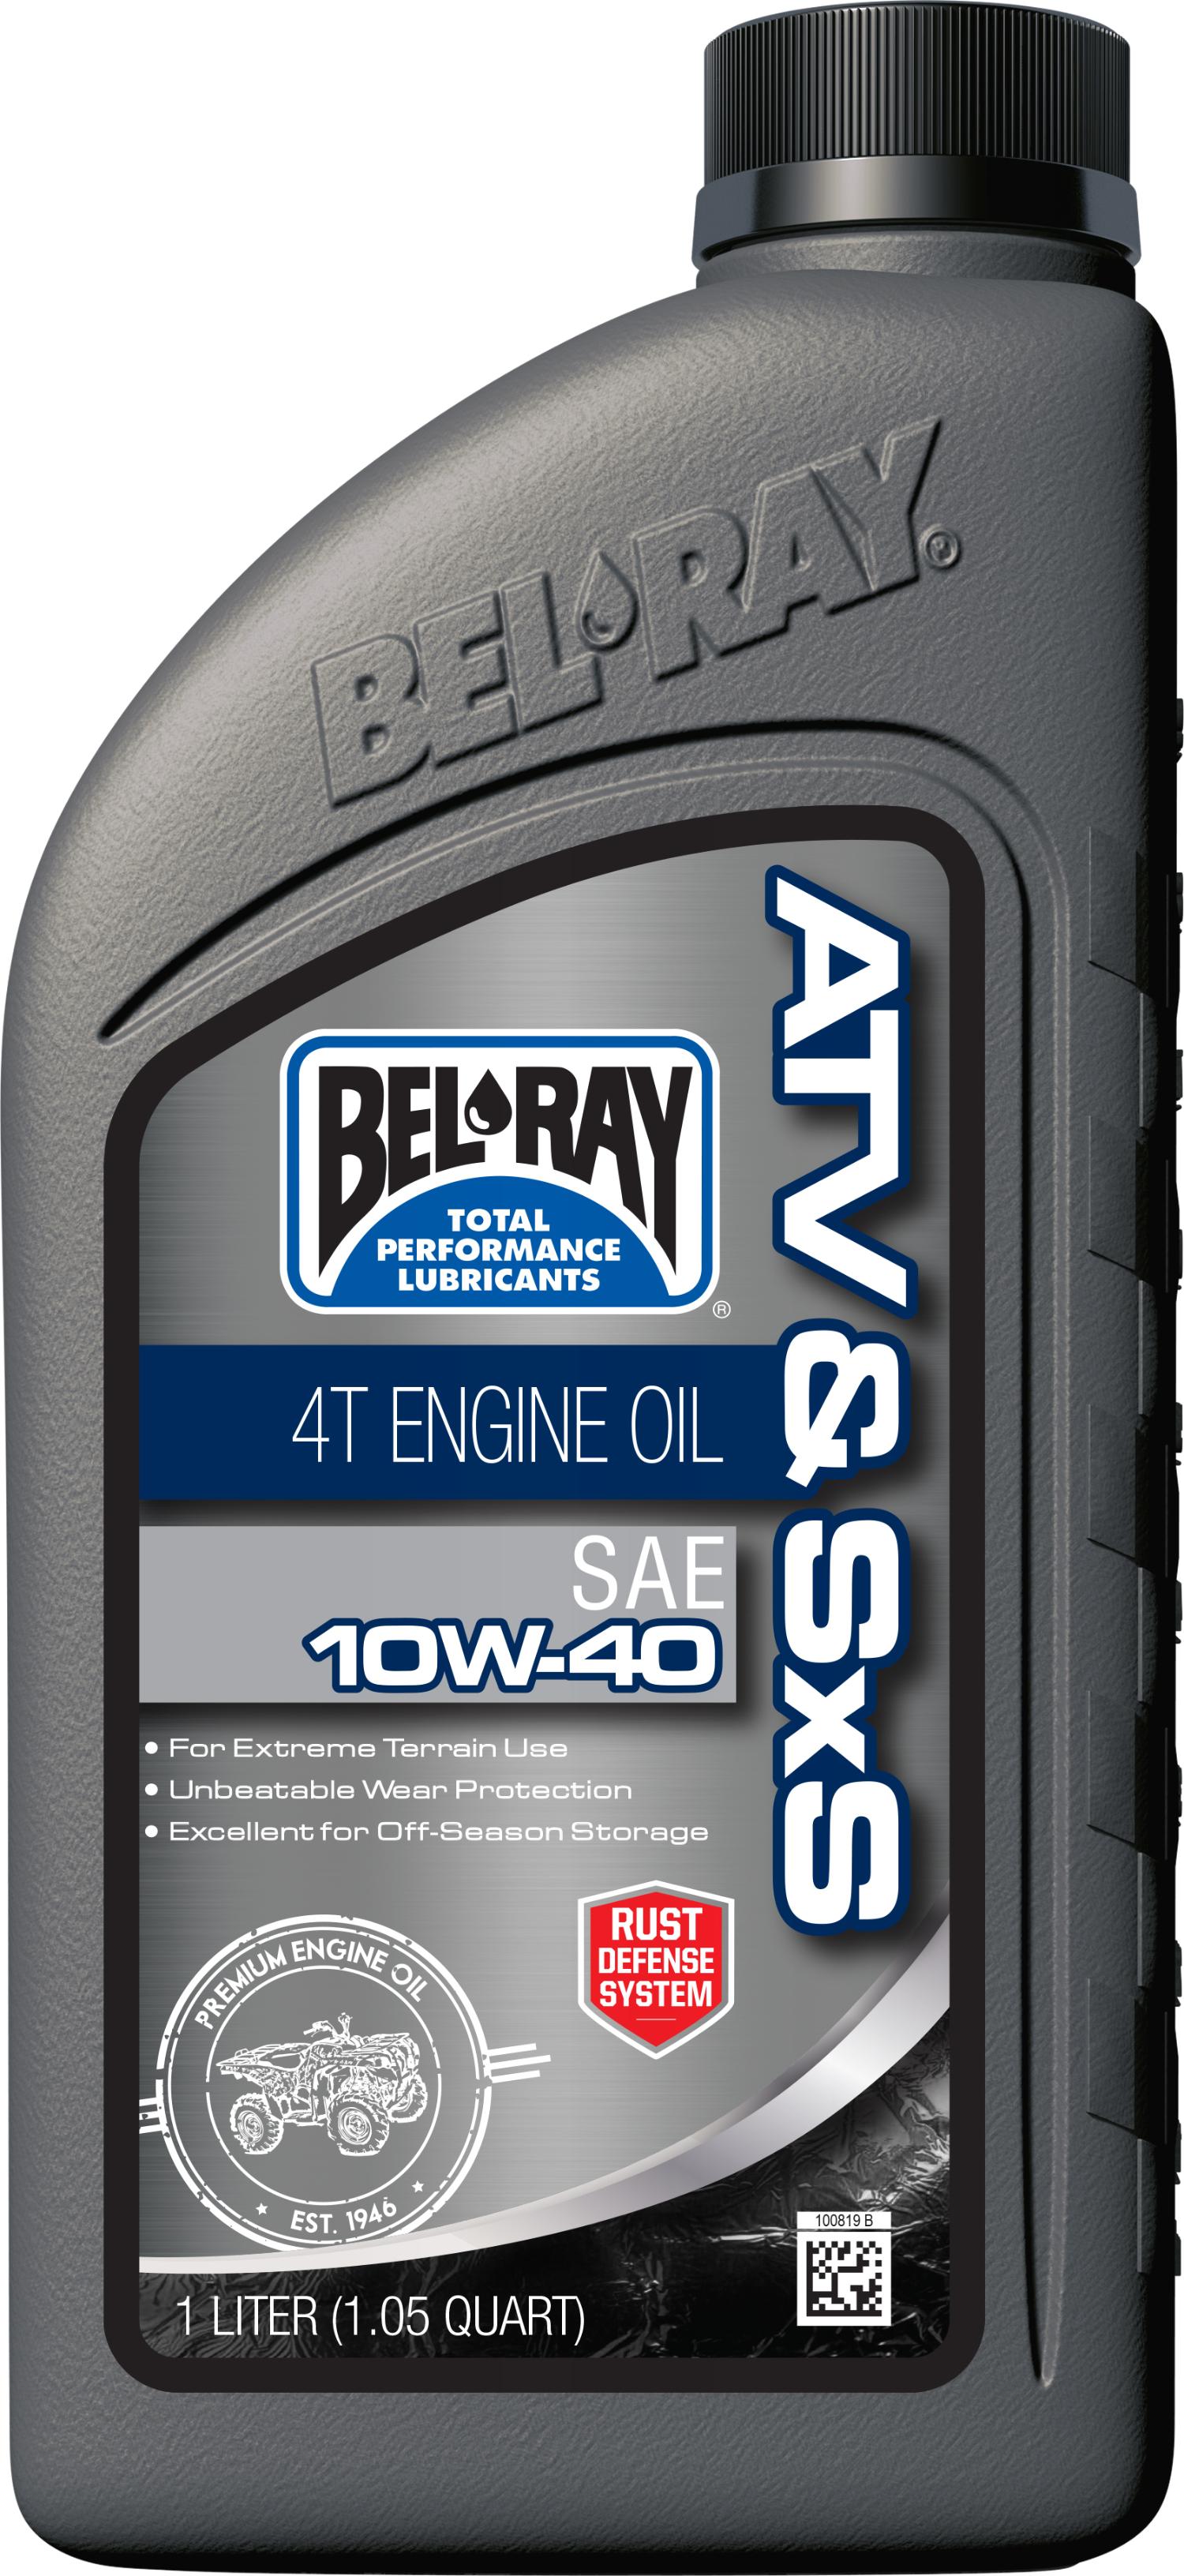 Bel-ray - Atv Trail Mineral 4t Engine Oil 10w-40 1l - 99050-B1LW